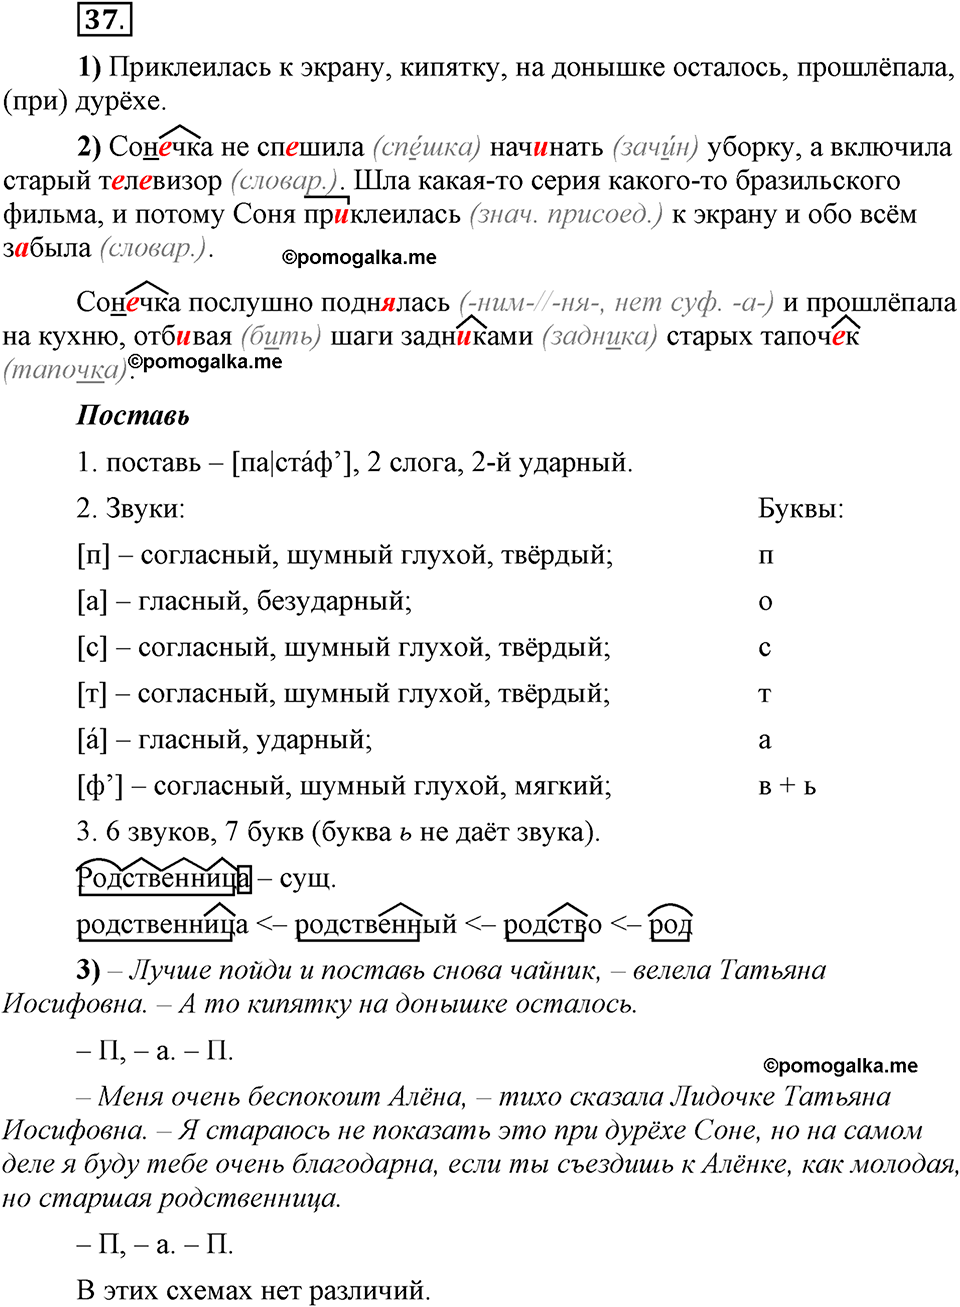 Глава 4. Упражнение №37 русский язык 6 класс Шмелёв